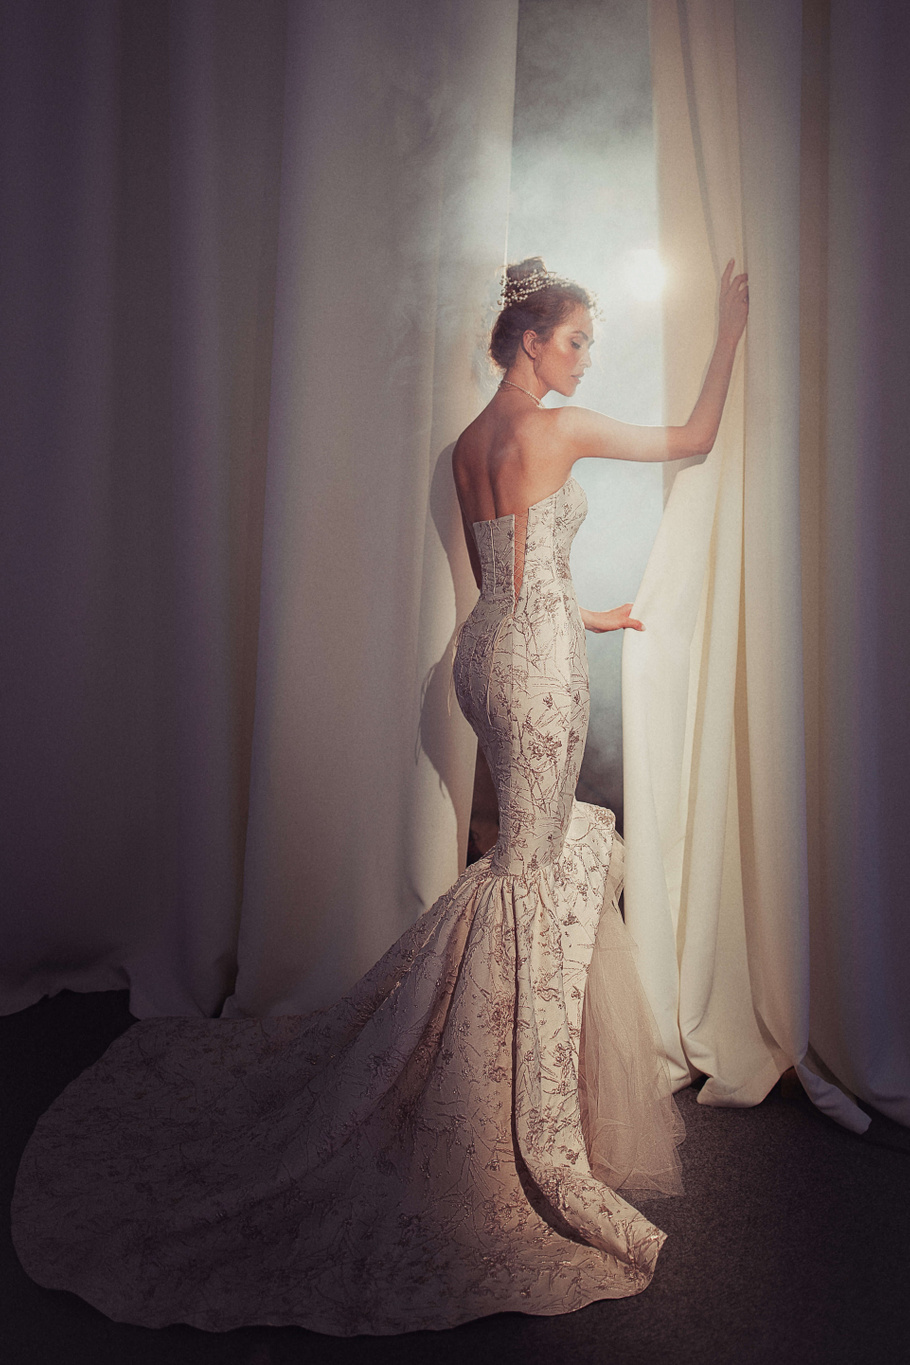 Купить свадебное платье «Цирцея» Бламмо Биамо из коллекции Свит Лайф 2021 года в Екатеринбурге